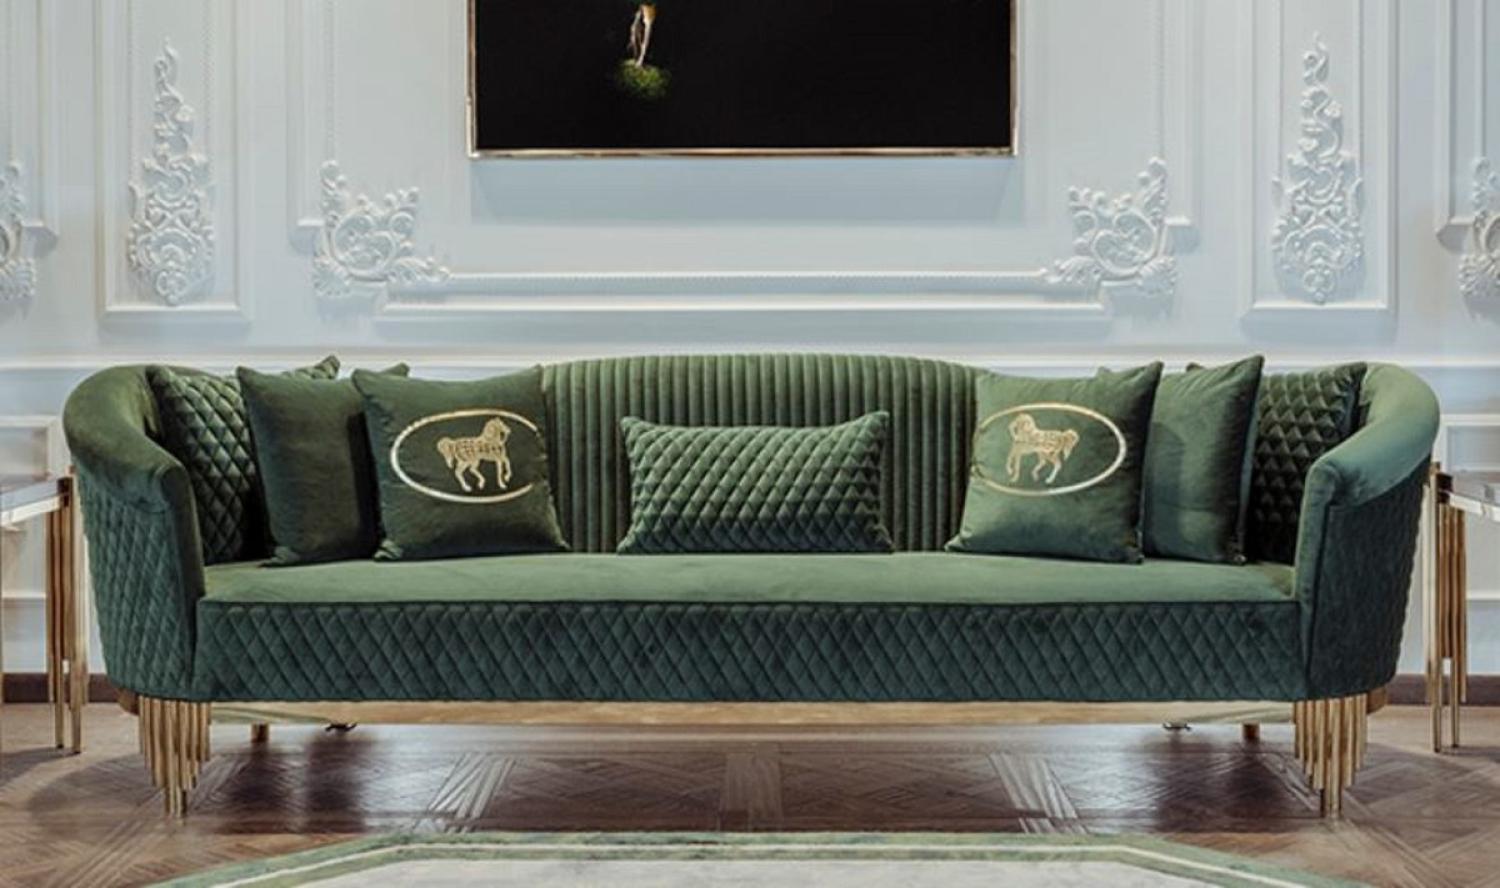 Casa Padrino Luxus Sofa Grün / Gold 260 x 88 x H. 88 cm - Modernes Wohnzimmer Sofa - Wohnzimmer & Hotel Möbel - Luxus Kollektion Bild 1